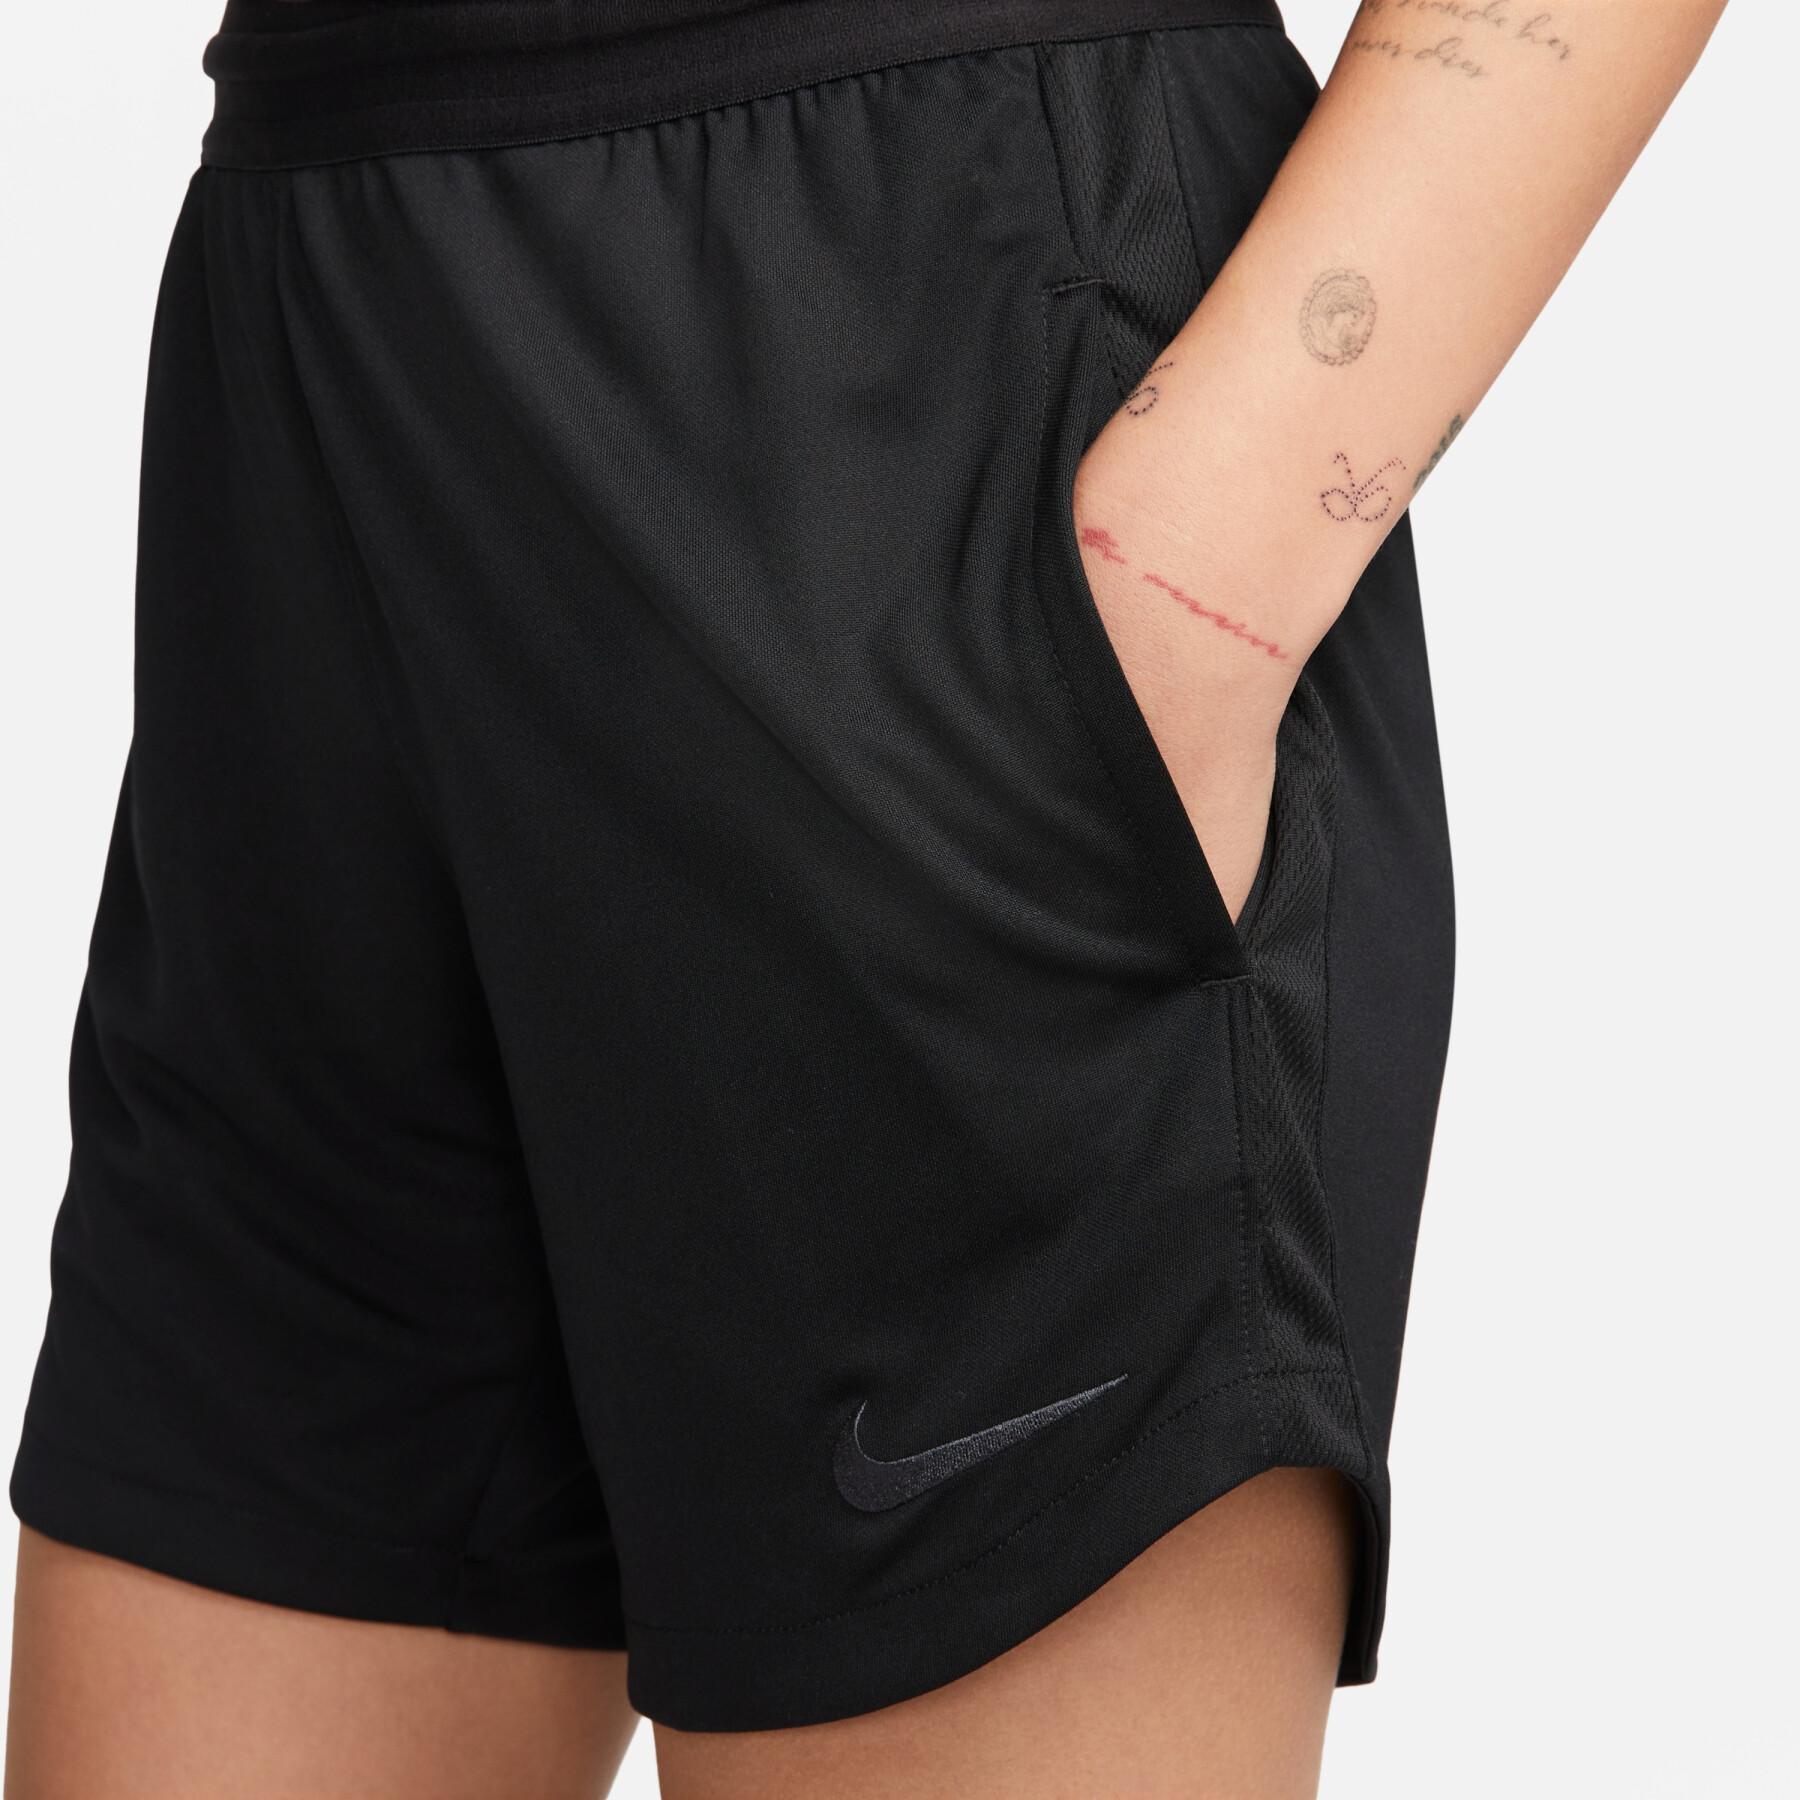 Shorts för kvinnor Nike Dri-FIT REF 2